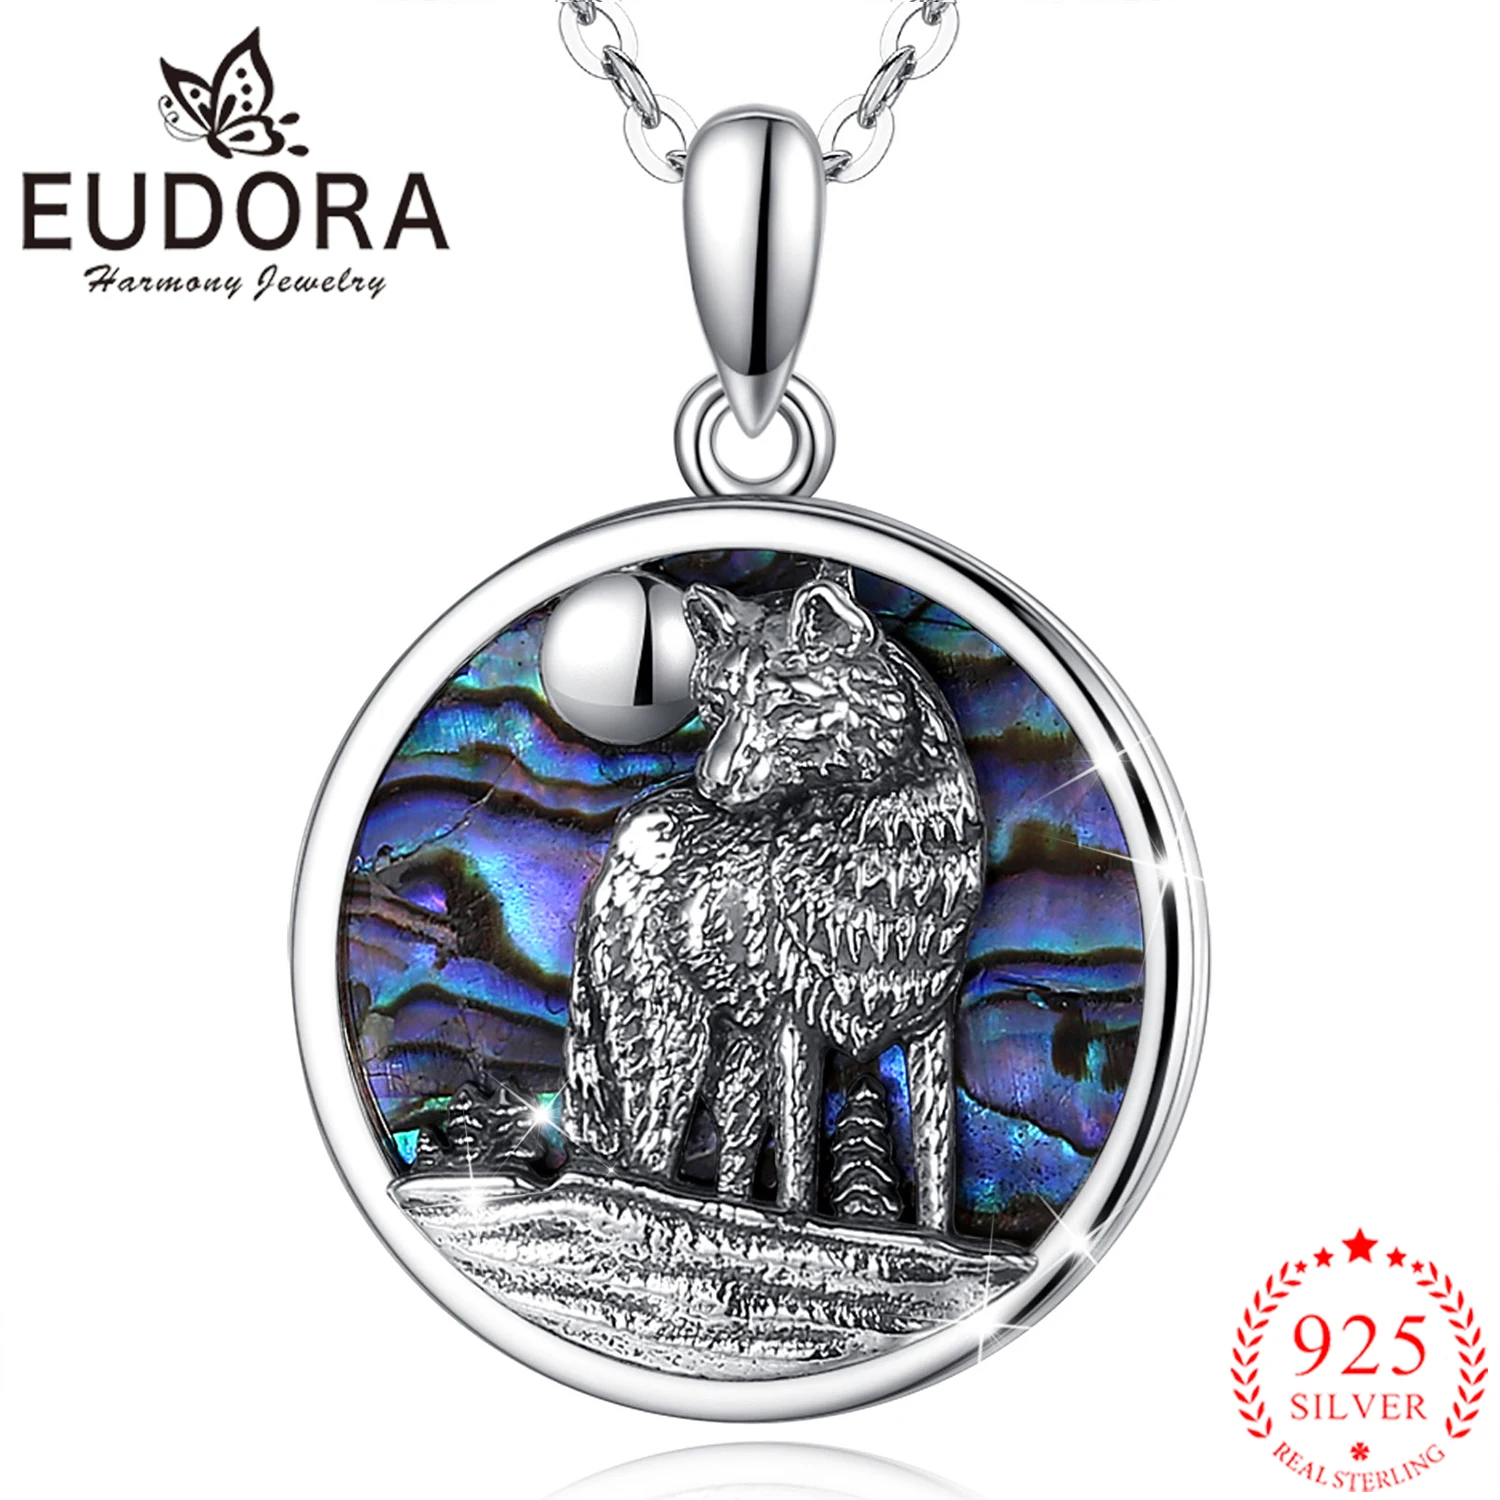 Eudora-colgante de plata de ley 925 con cabeza de concha de abulón y Lobo, collar fino colorido azul, joyería para líder